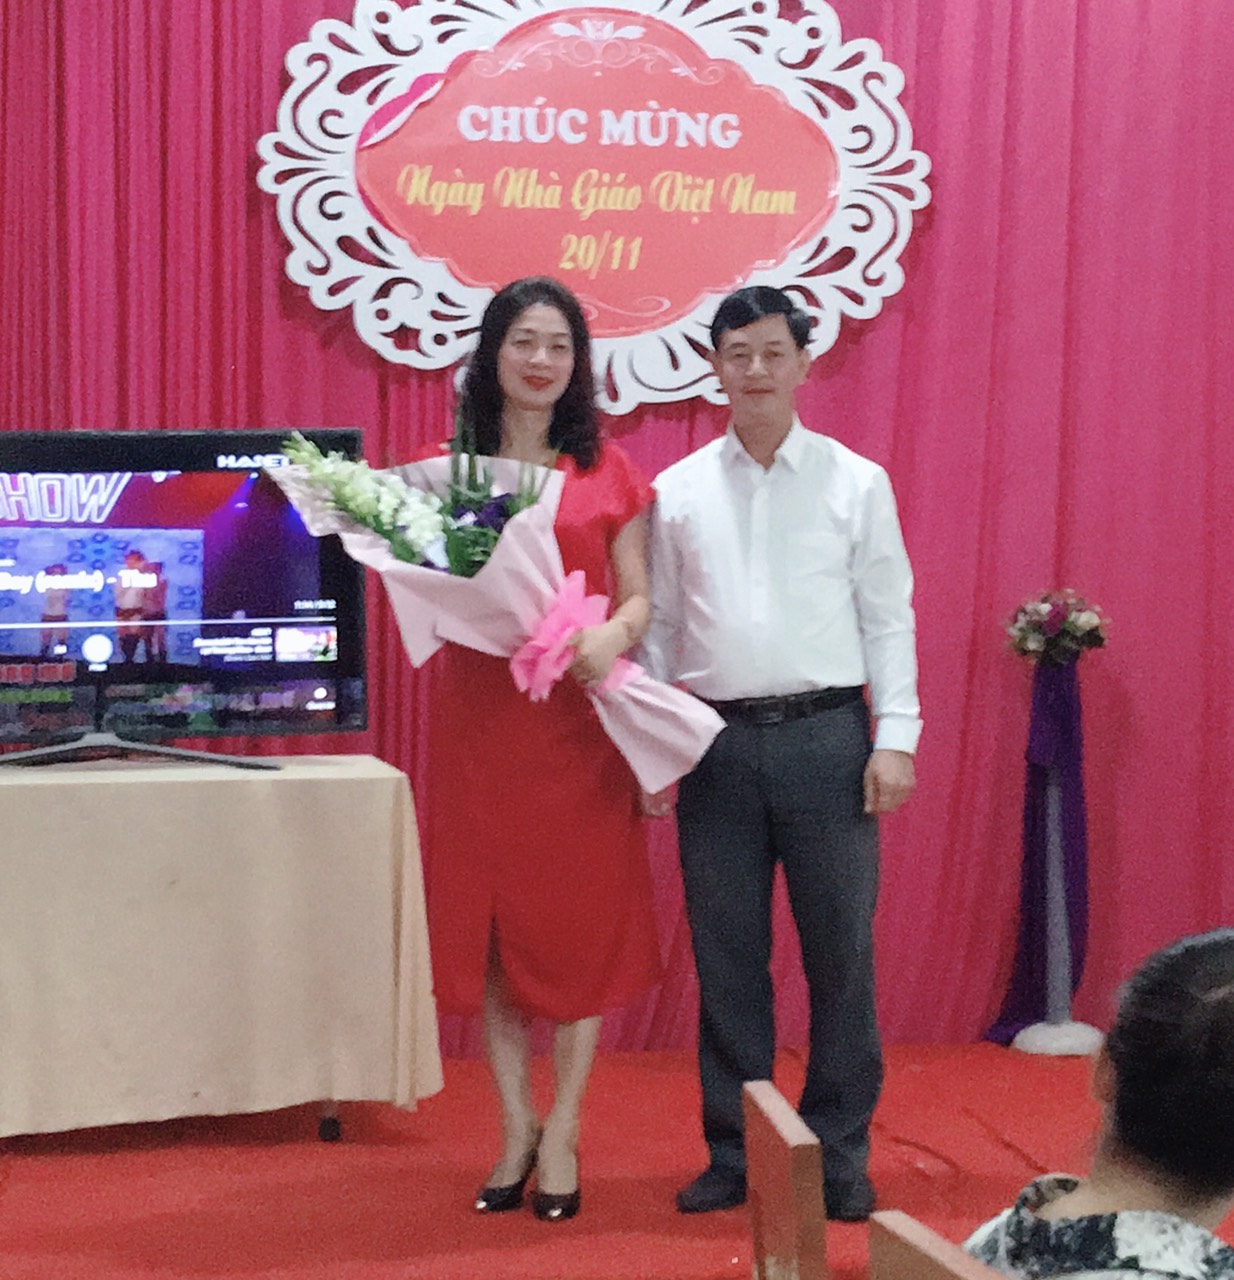 Trường Mầm non Thanh Trường tổ chức Chương trình tọa đàm nhân ngày Nhà giáo Việt Nam 20/11 và chia tay 06 đồng chí giáo viên, nhân viên được nghỉ hưu theo chế độ Nhà nước